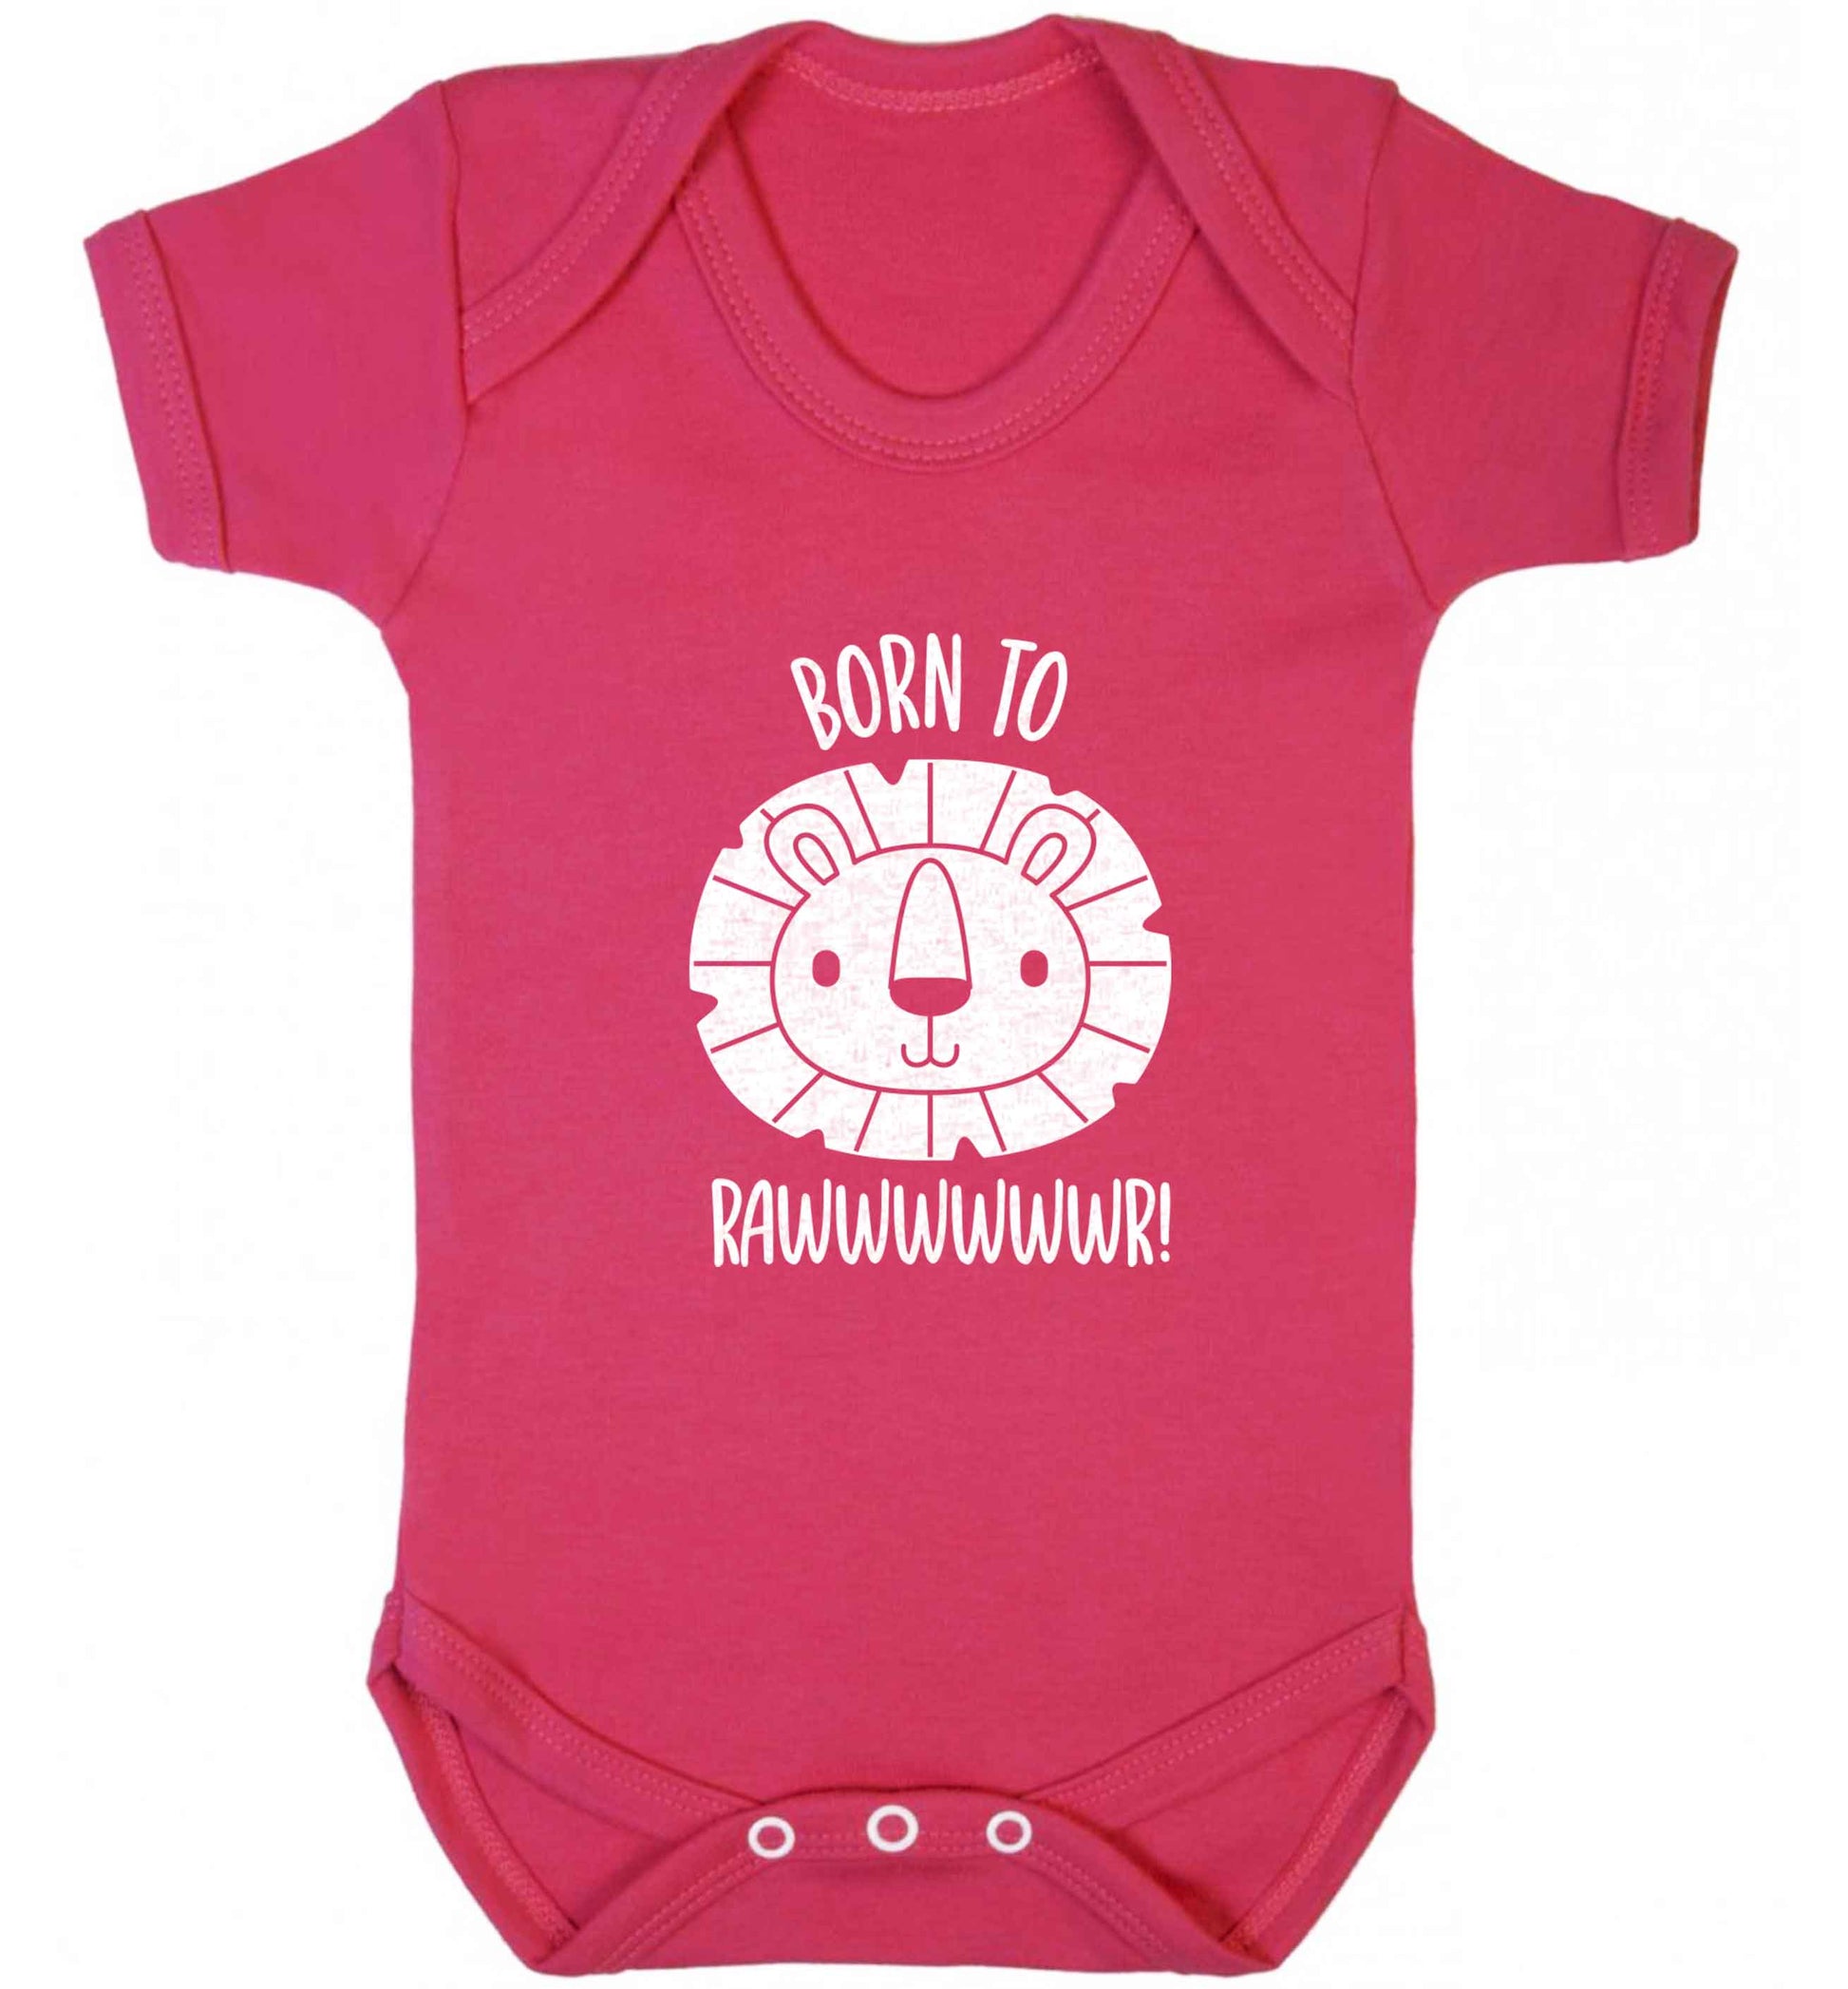 Born to rawr baby vest dark pink 18-24 months